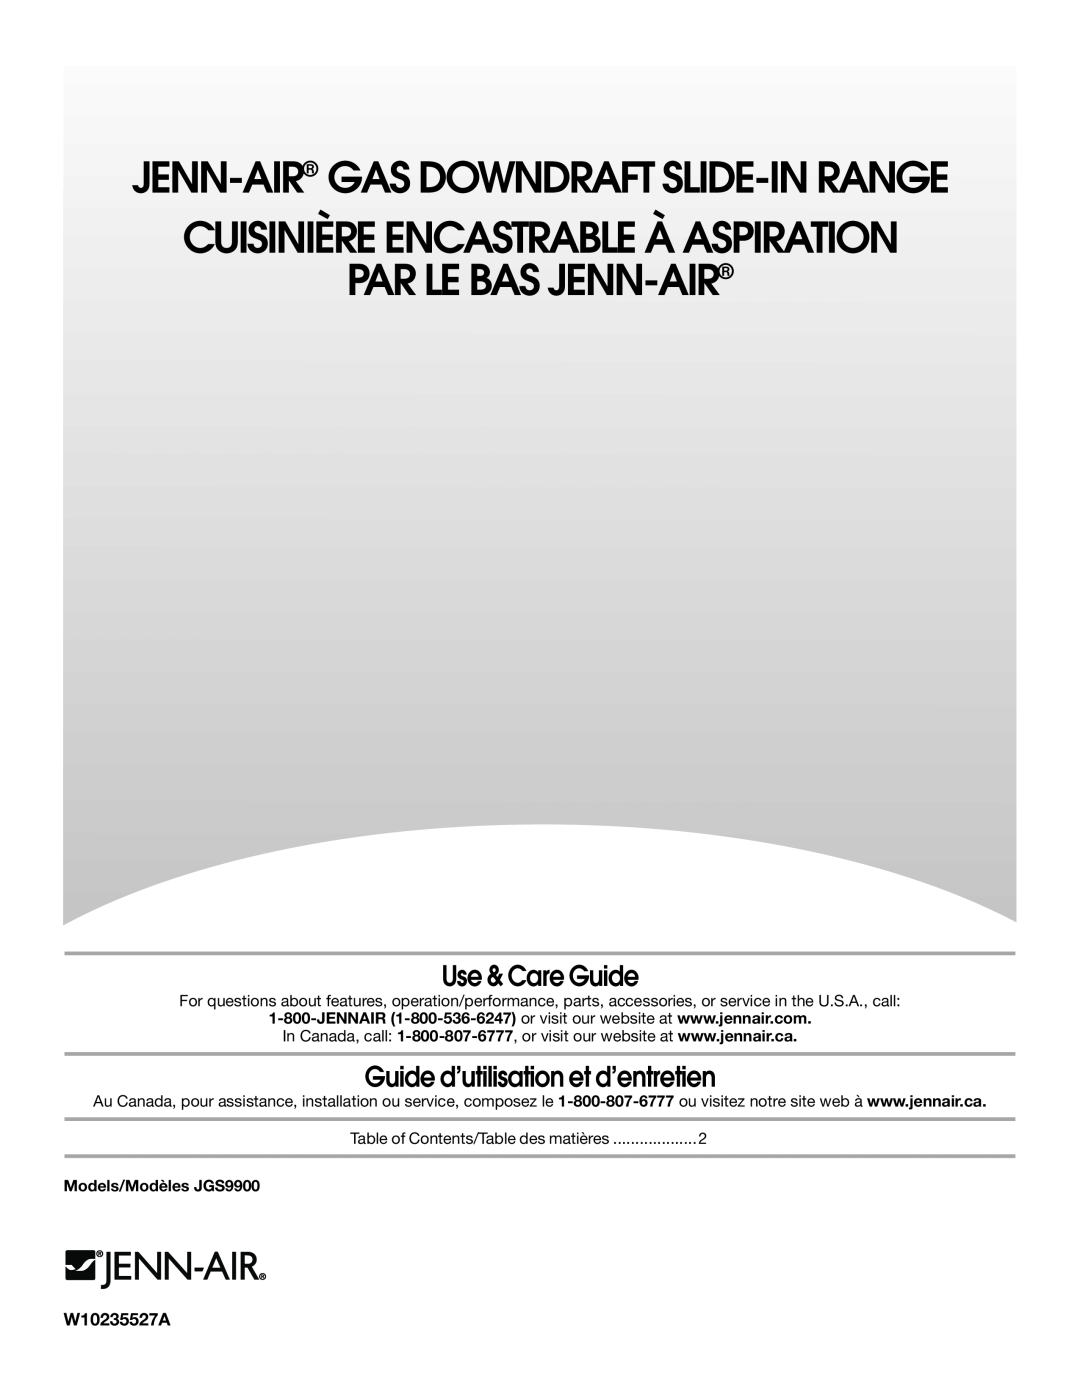 Jenn-Air JGS9900 manual Use & Care Guide, Guide d’utilisation et d’entretien, Jenn-Air Gas Downdraft Slide-In Range 